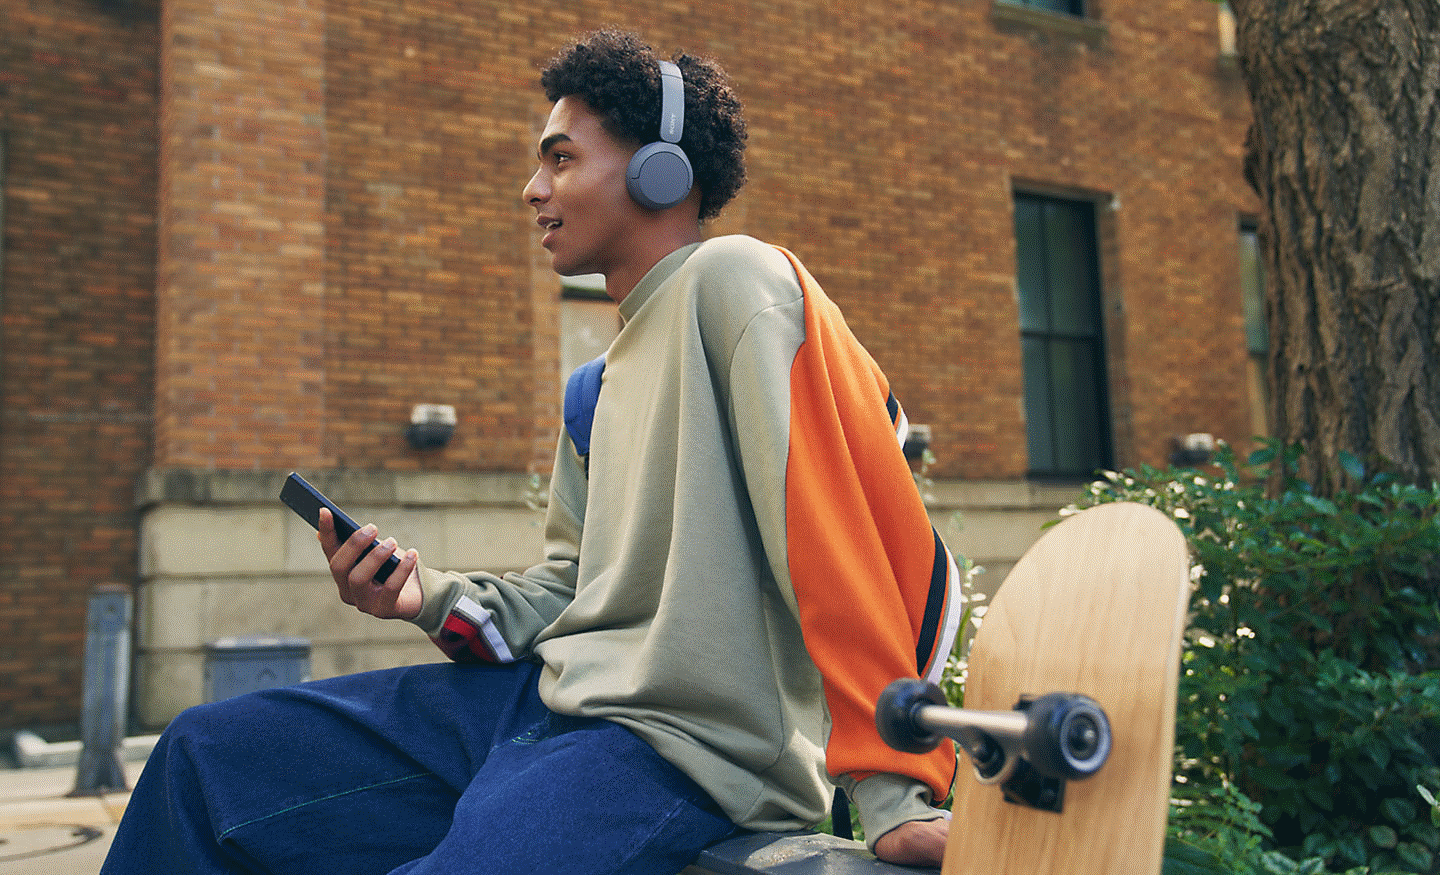 Vaizdas, kuriame vyras sėdi ant sienos ir dėvi „Sony“ ausines WH-CH520, o rankose laiko mobilųjį telefoną, priekiniame plane – riedlentė